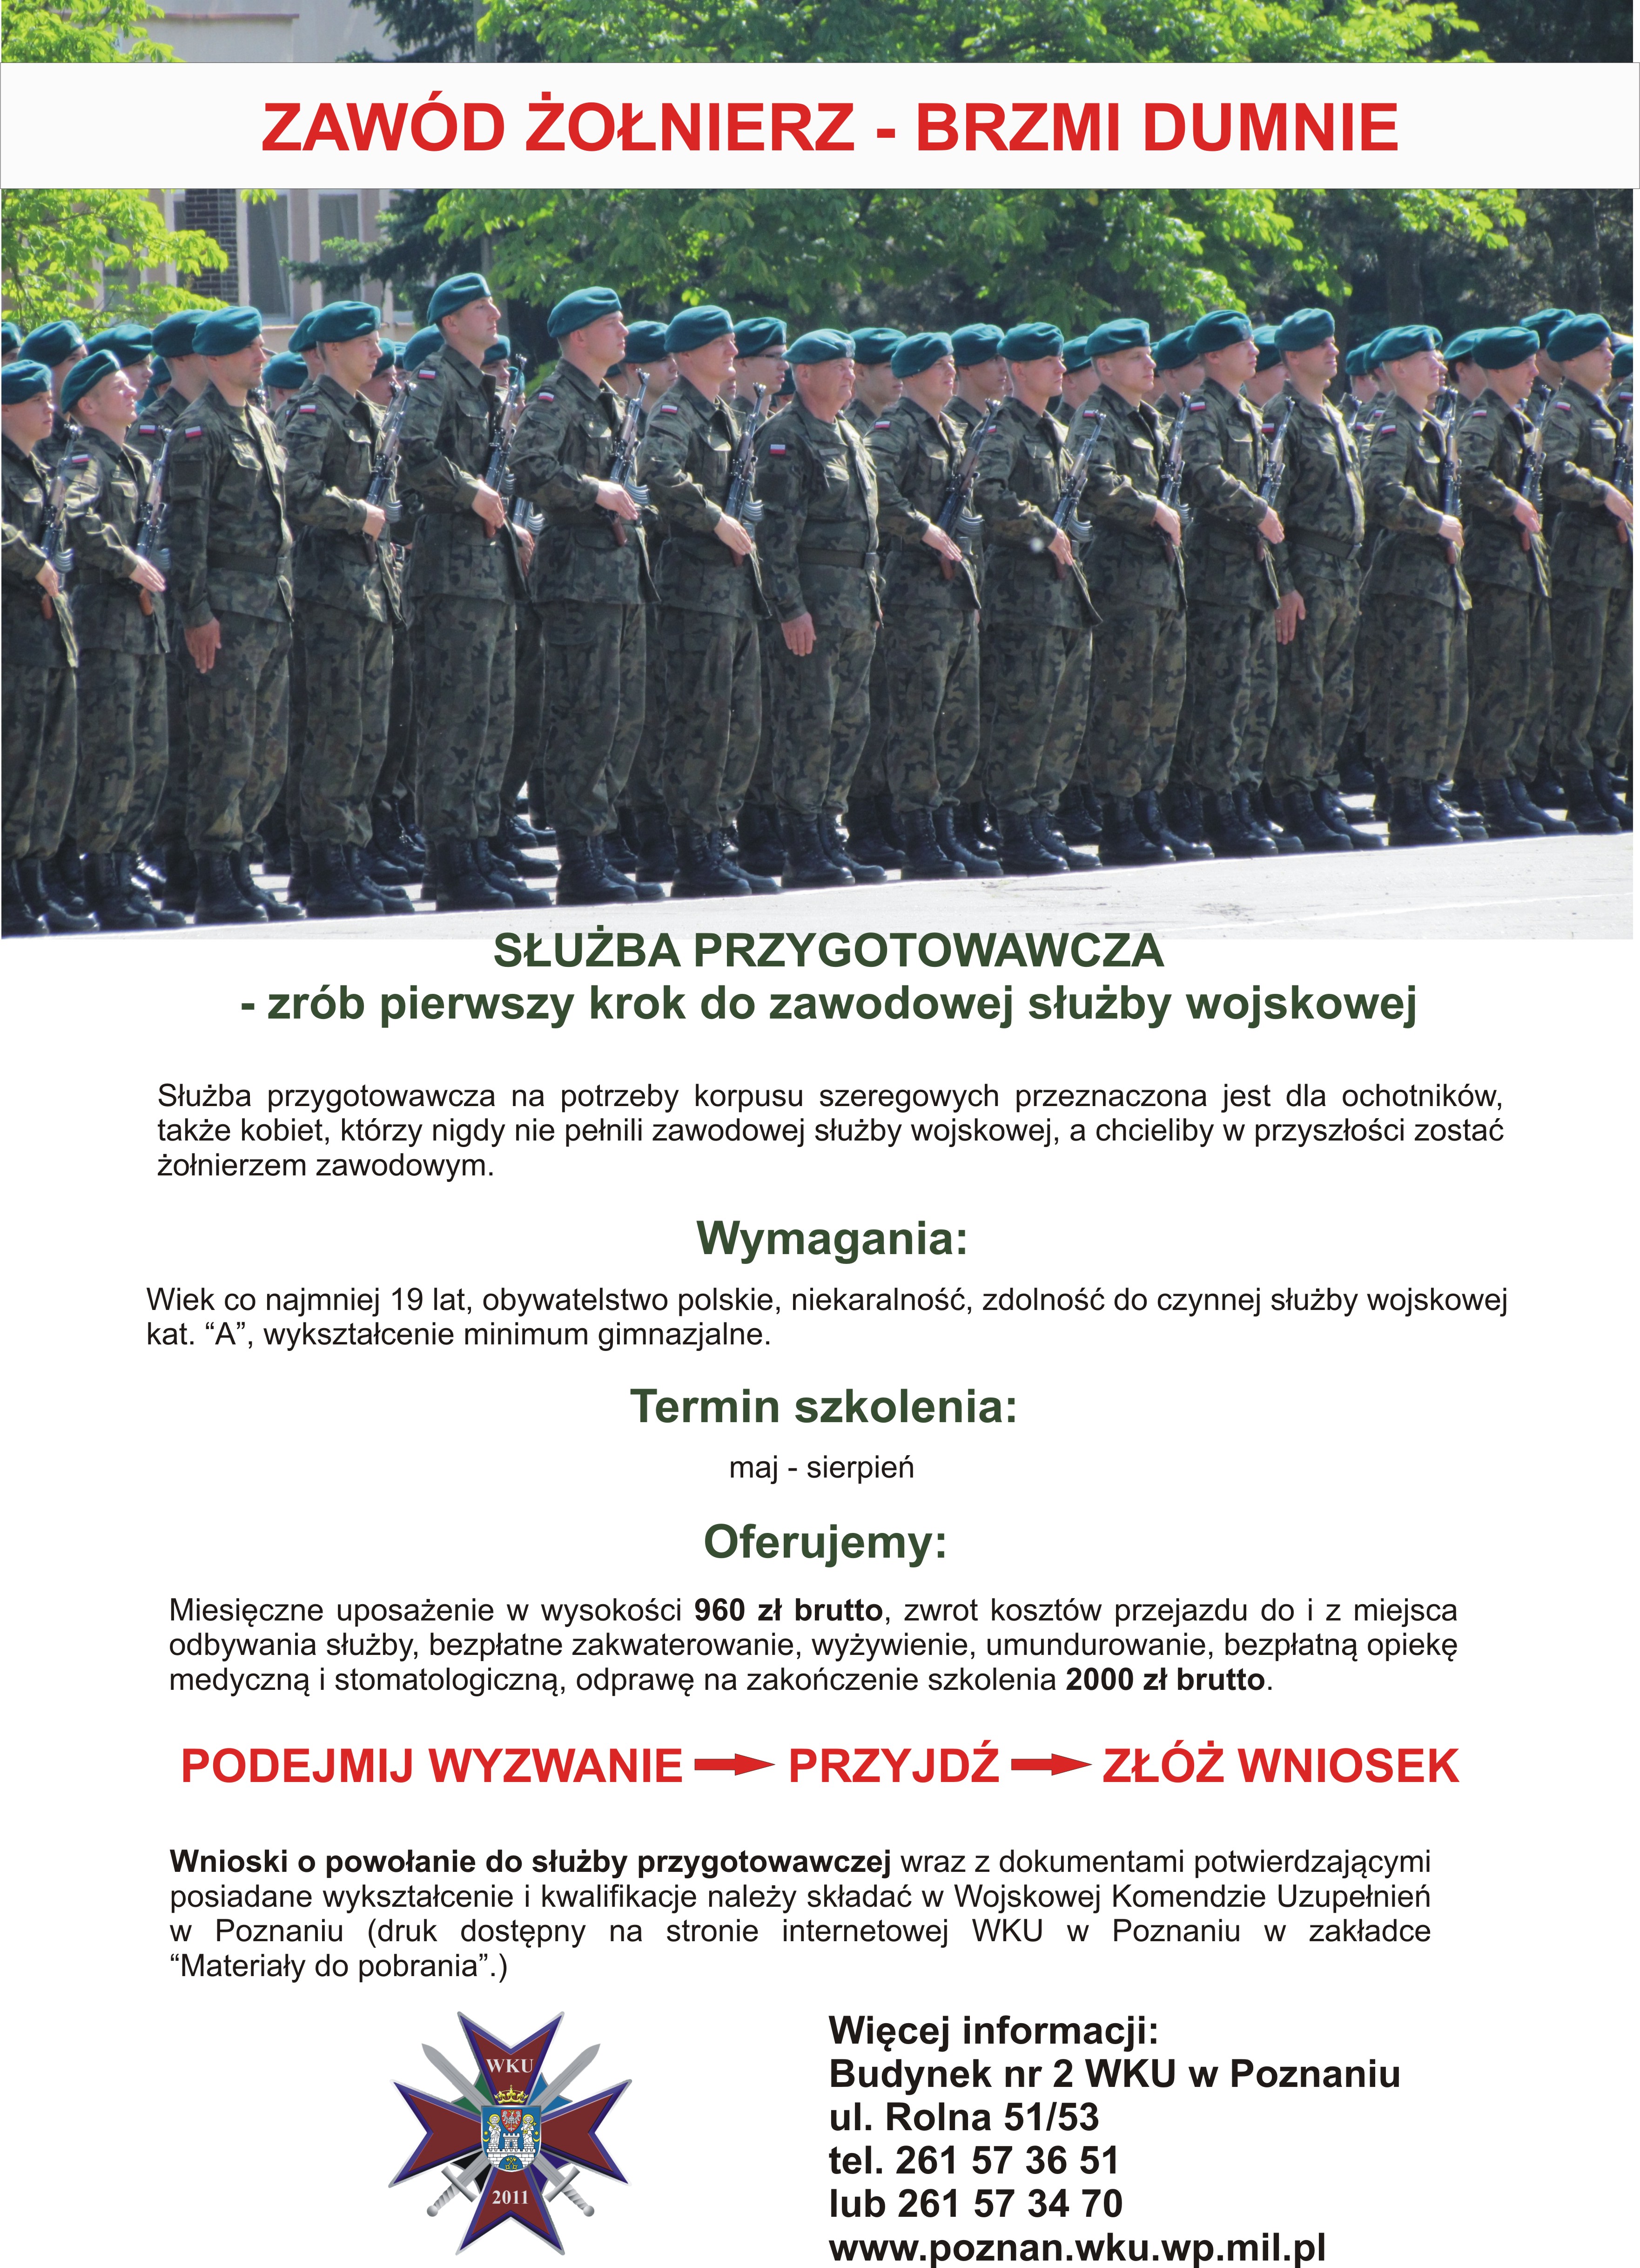 Plakat zachęcający do udziału w naborze do służby przygotowawczej w wojsku polskim